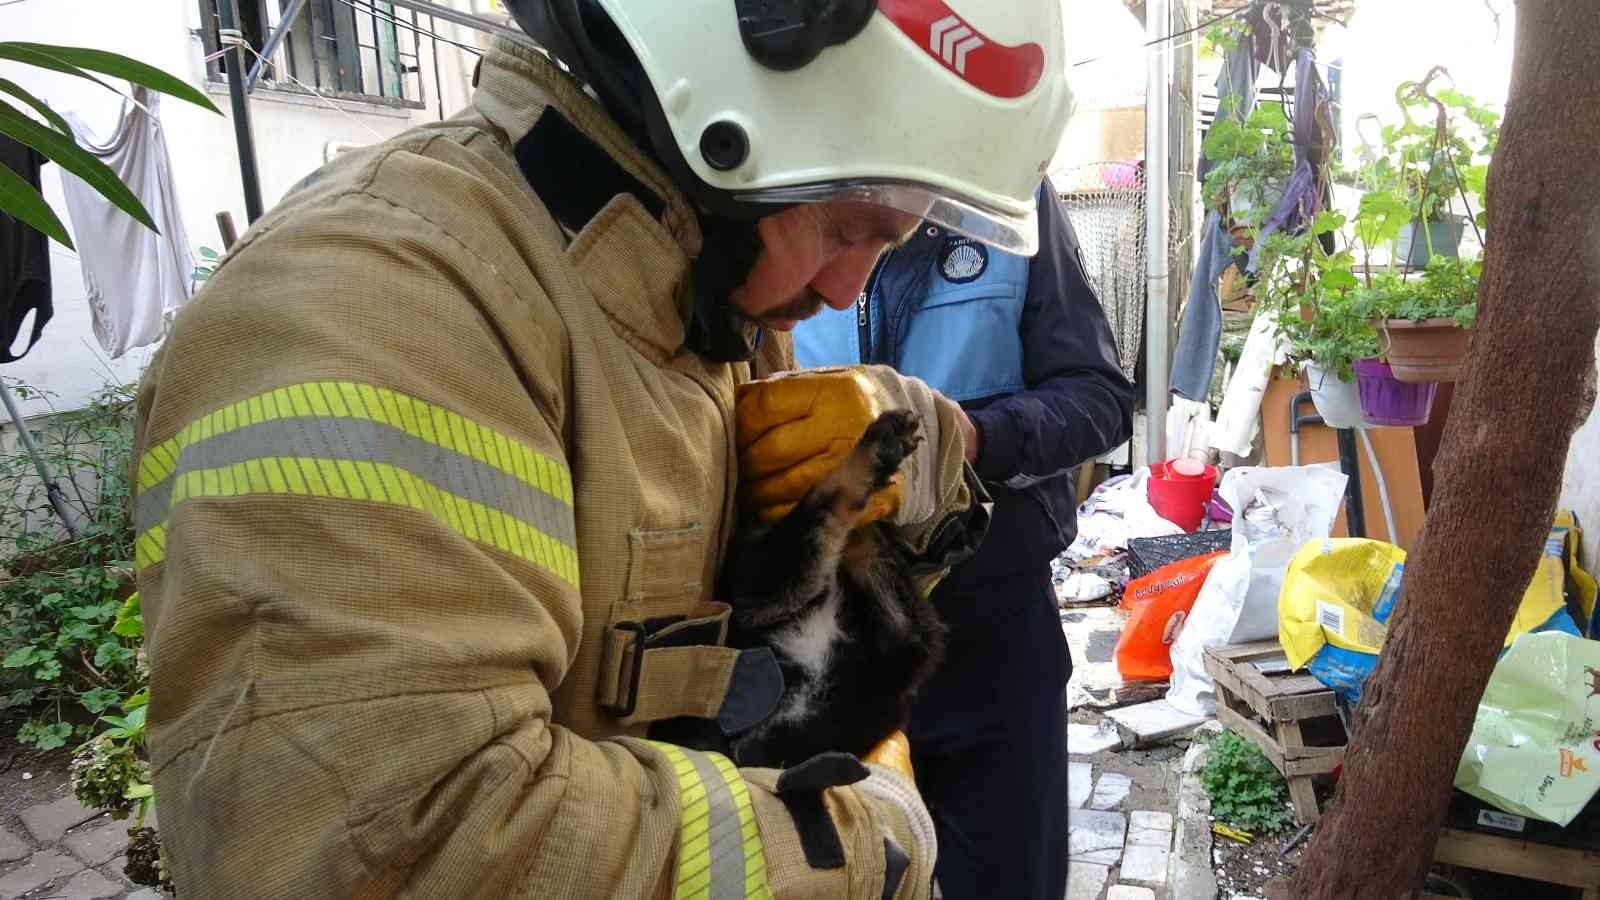 Kartal’da yanan evdeki köpek ve kediler son anda kurtarıldı #istanbul